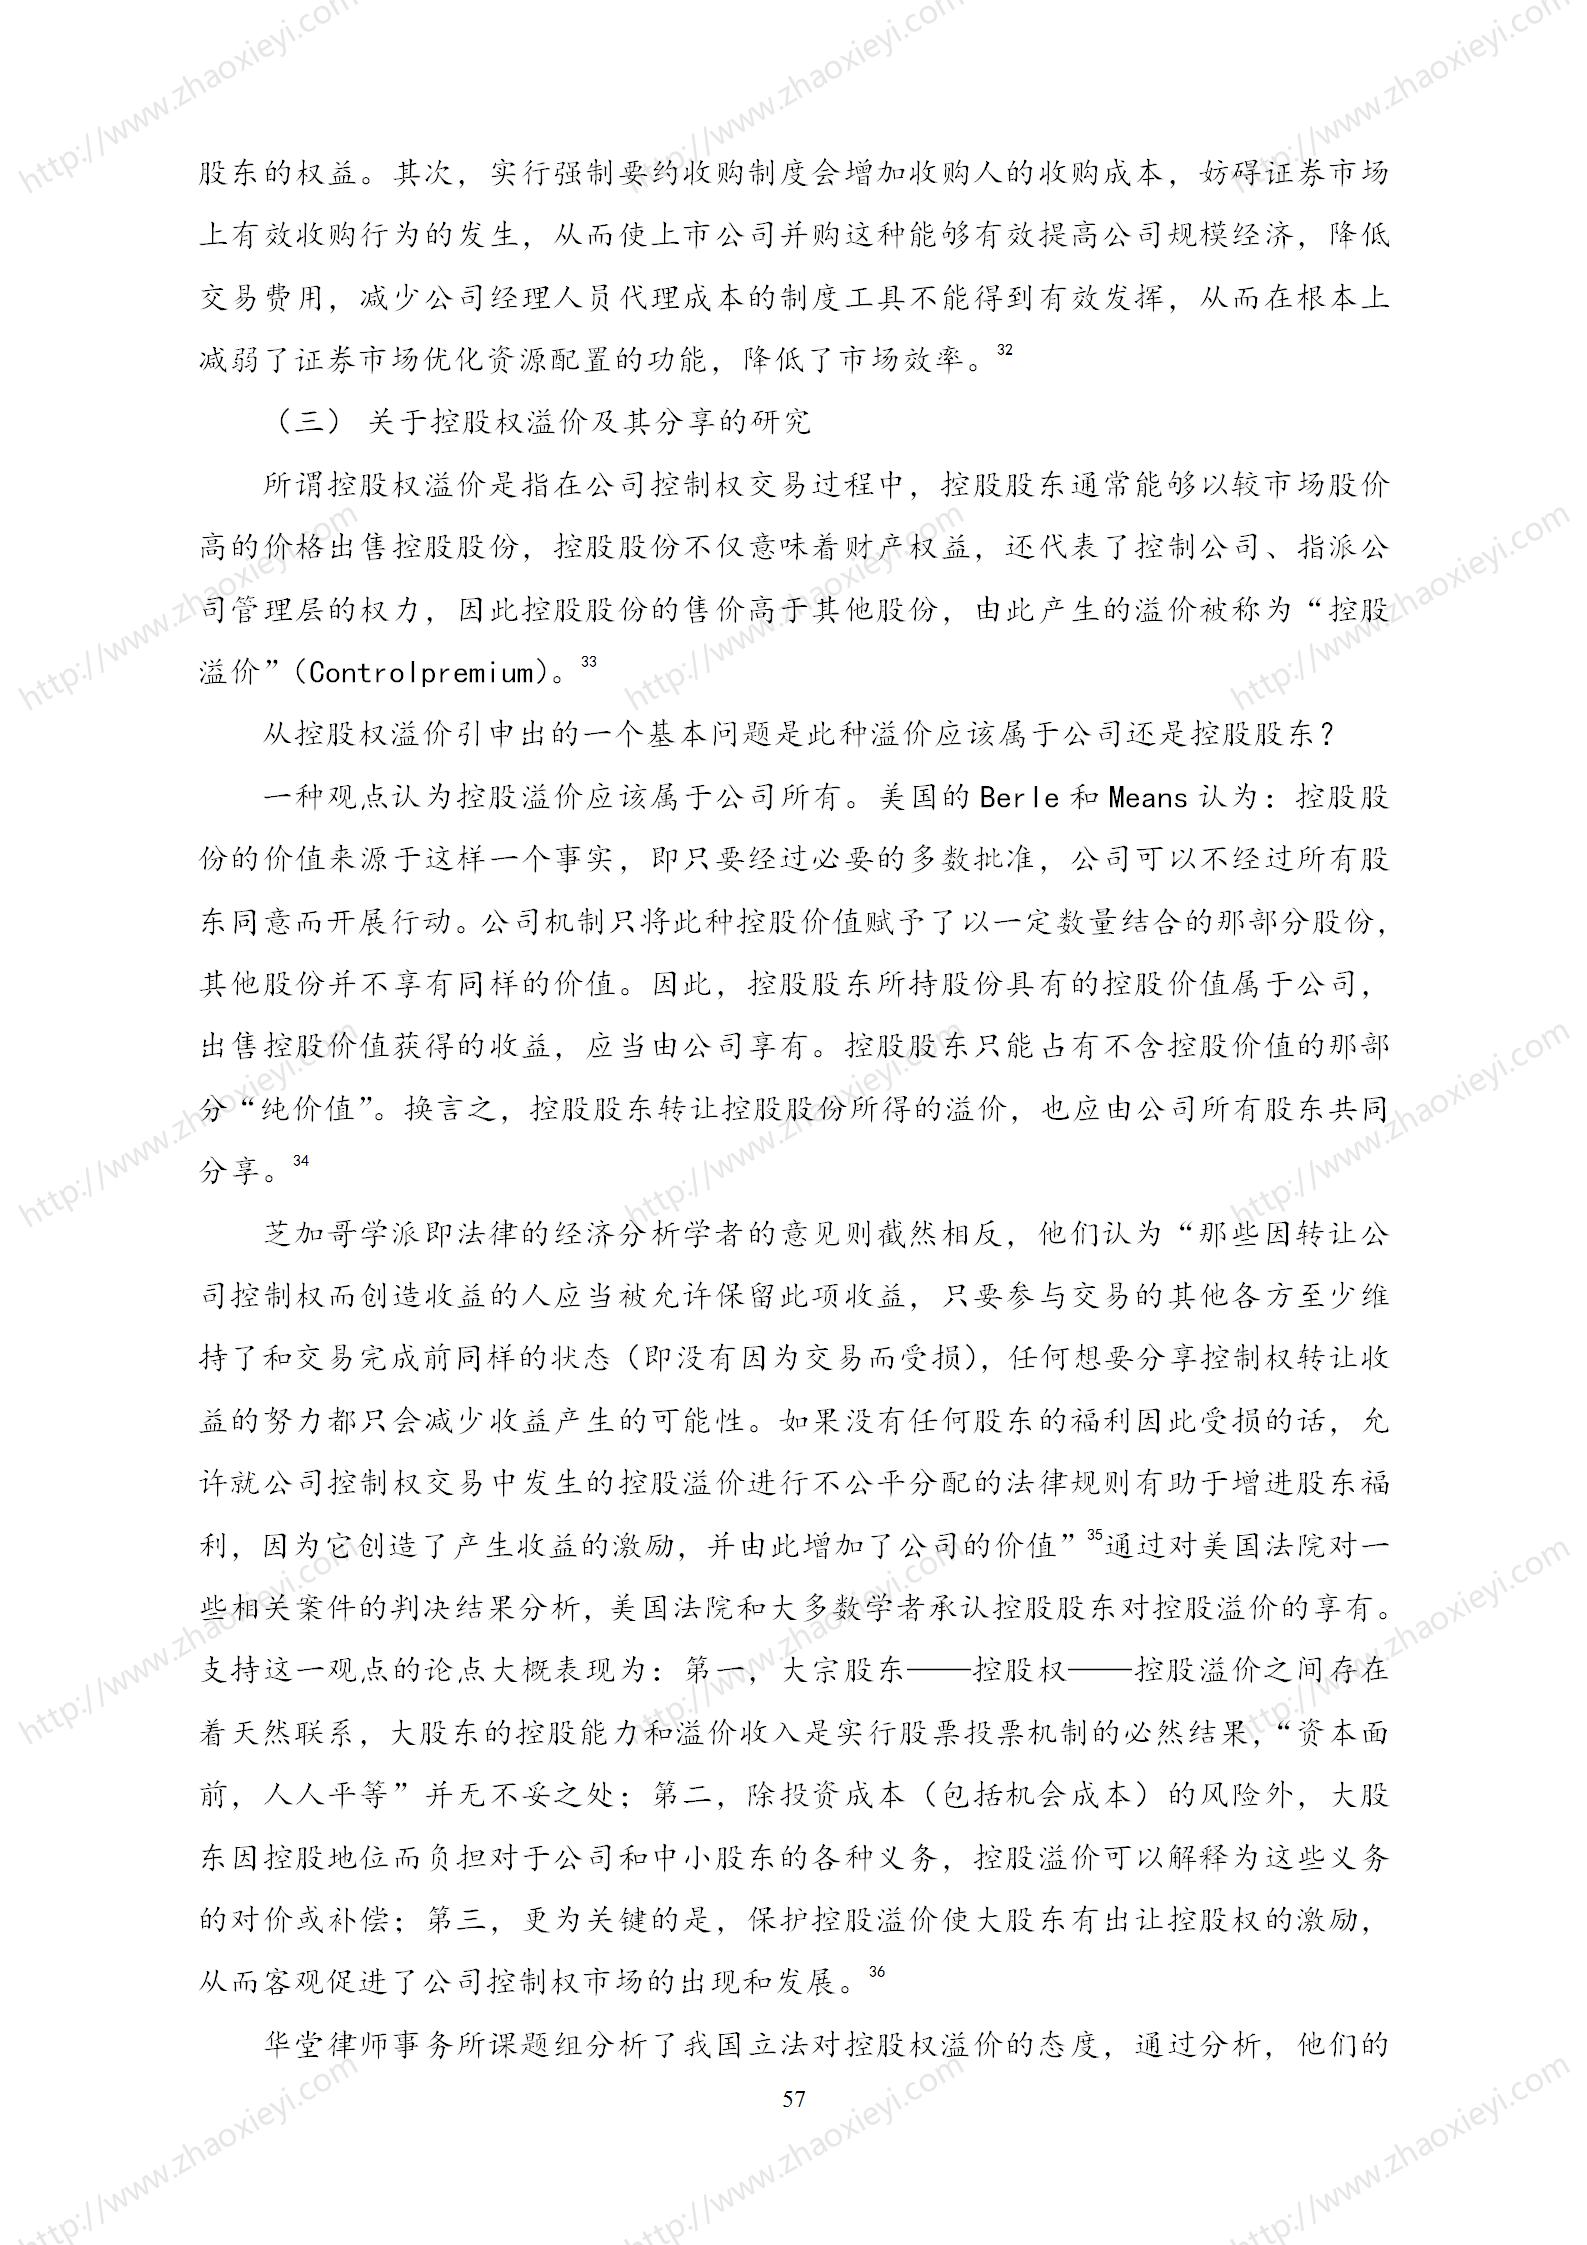 中国上市公司并购重组的模式研究_28.jpg